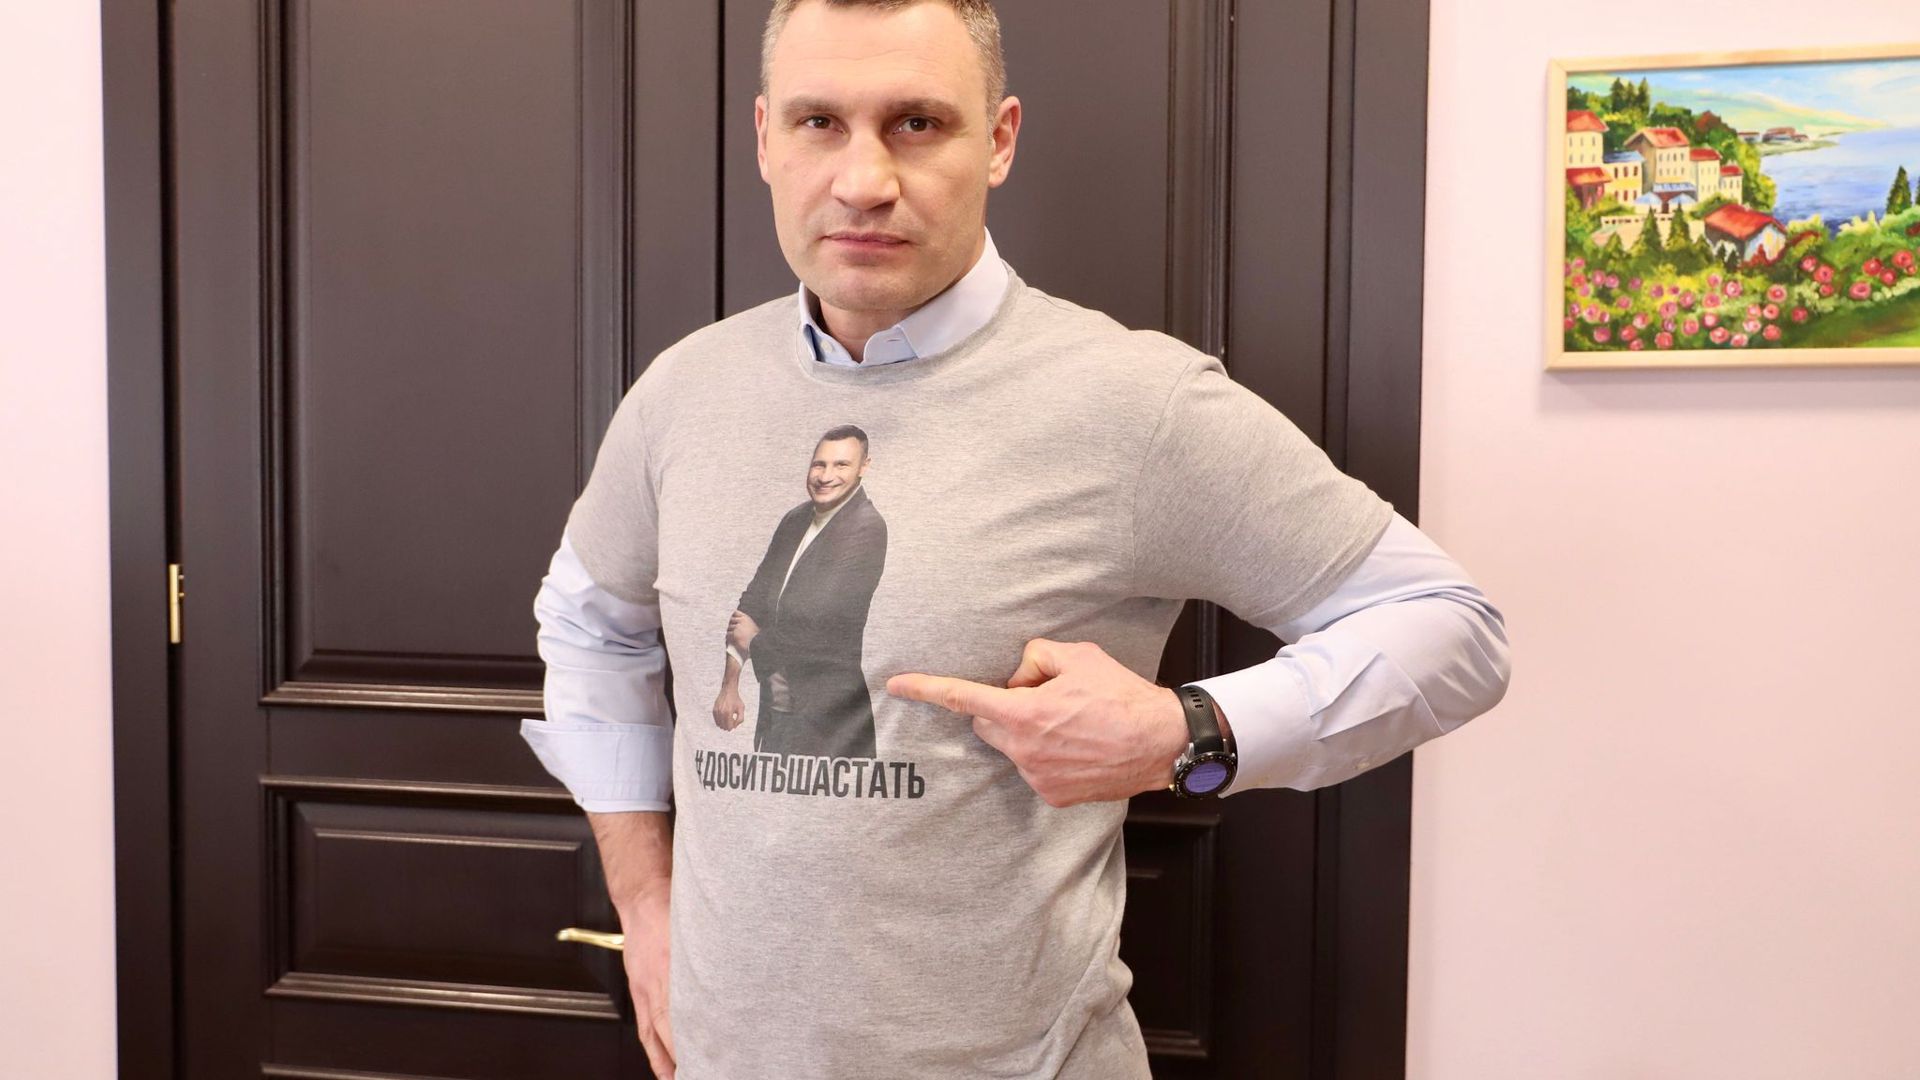 Vitali Klitschko (48), Ex-Boxweltmeister und Bürgermeister der ukrainischen Hauptstadt, warnt Sportfans eindrücklich vor der Nutzung von Freiluftsportgeräten trotz Coronavirus-Verbot und trägt ein T-Shirt mit der Warnung: „#Es reicht mit dem Herumlaufen“.